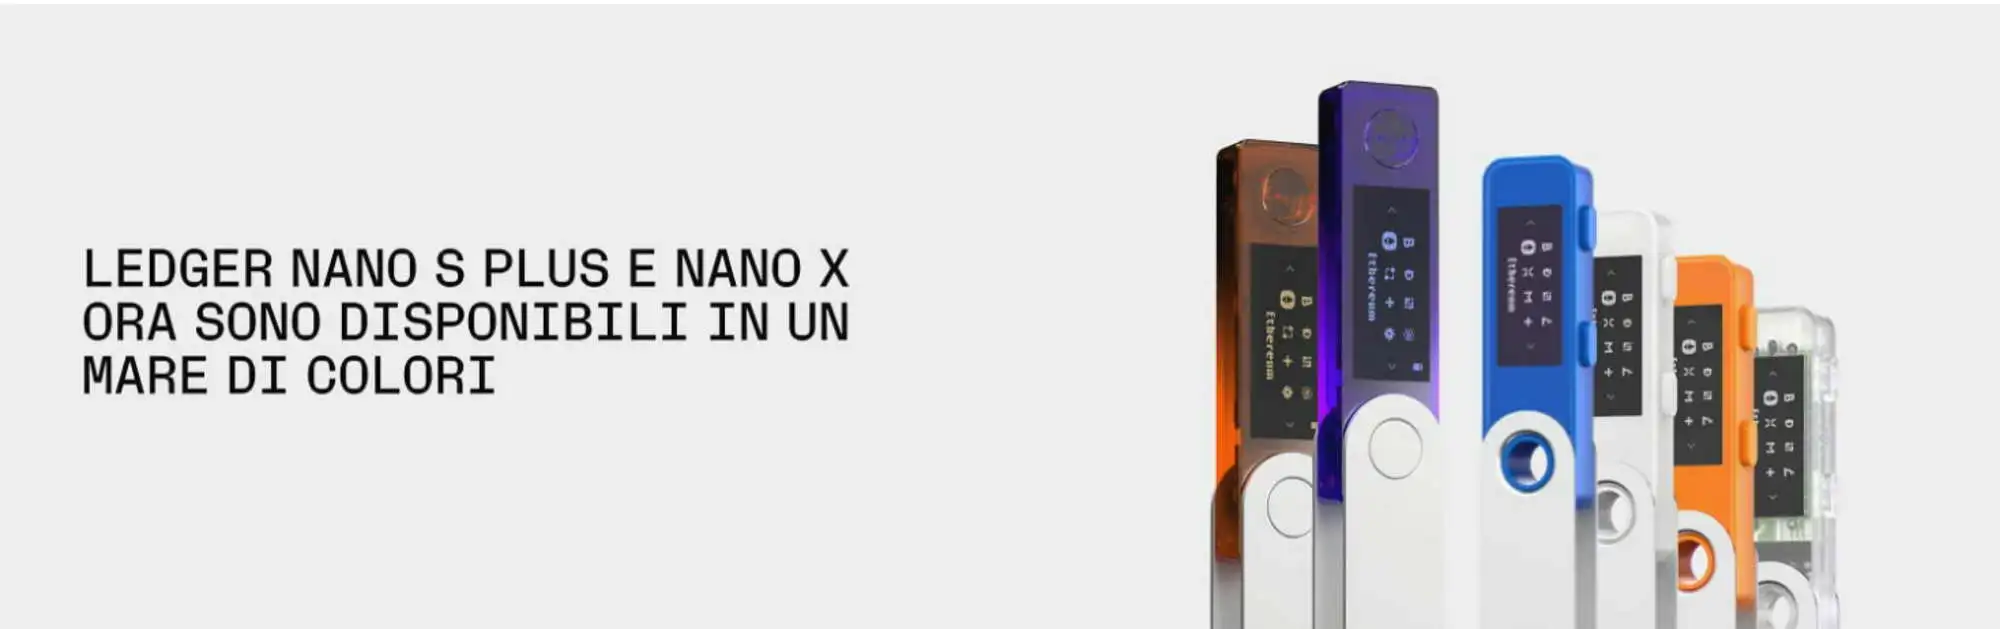 Wallet hardware criptovalute Ledger Nano X